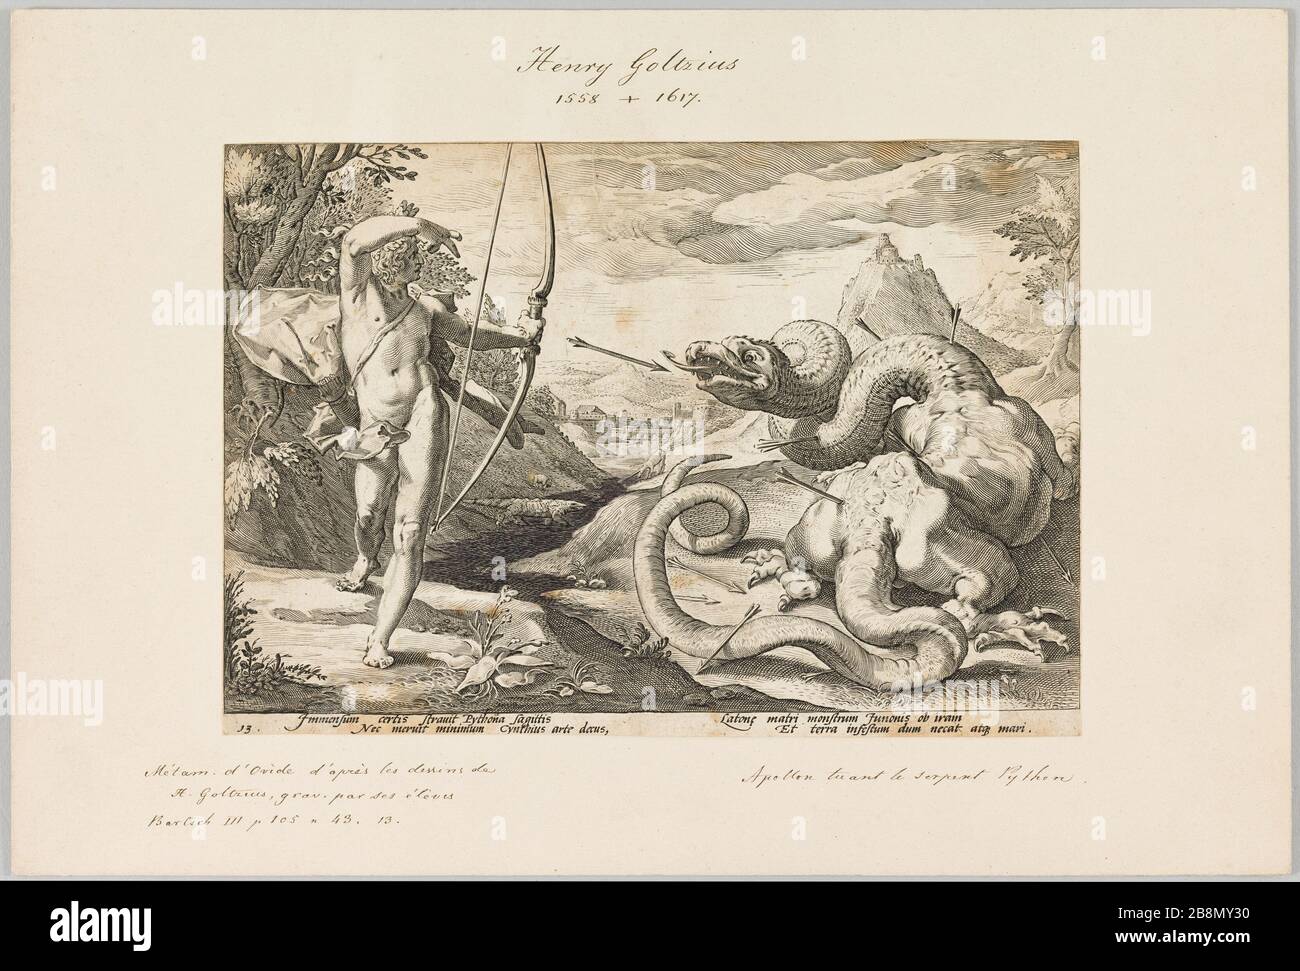 Apollo killing the Python Anonyme. Apollon tuant le serpent Python. Gravure. Paris, musée de la Vie romantique. Stock Photo